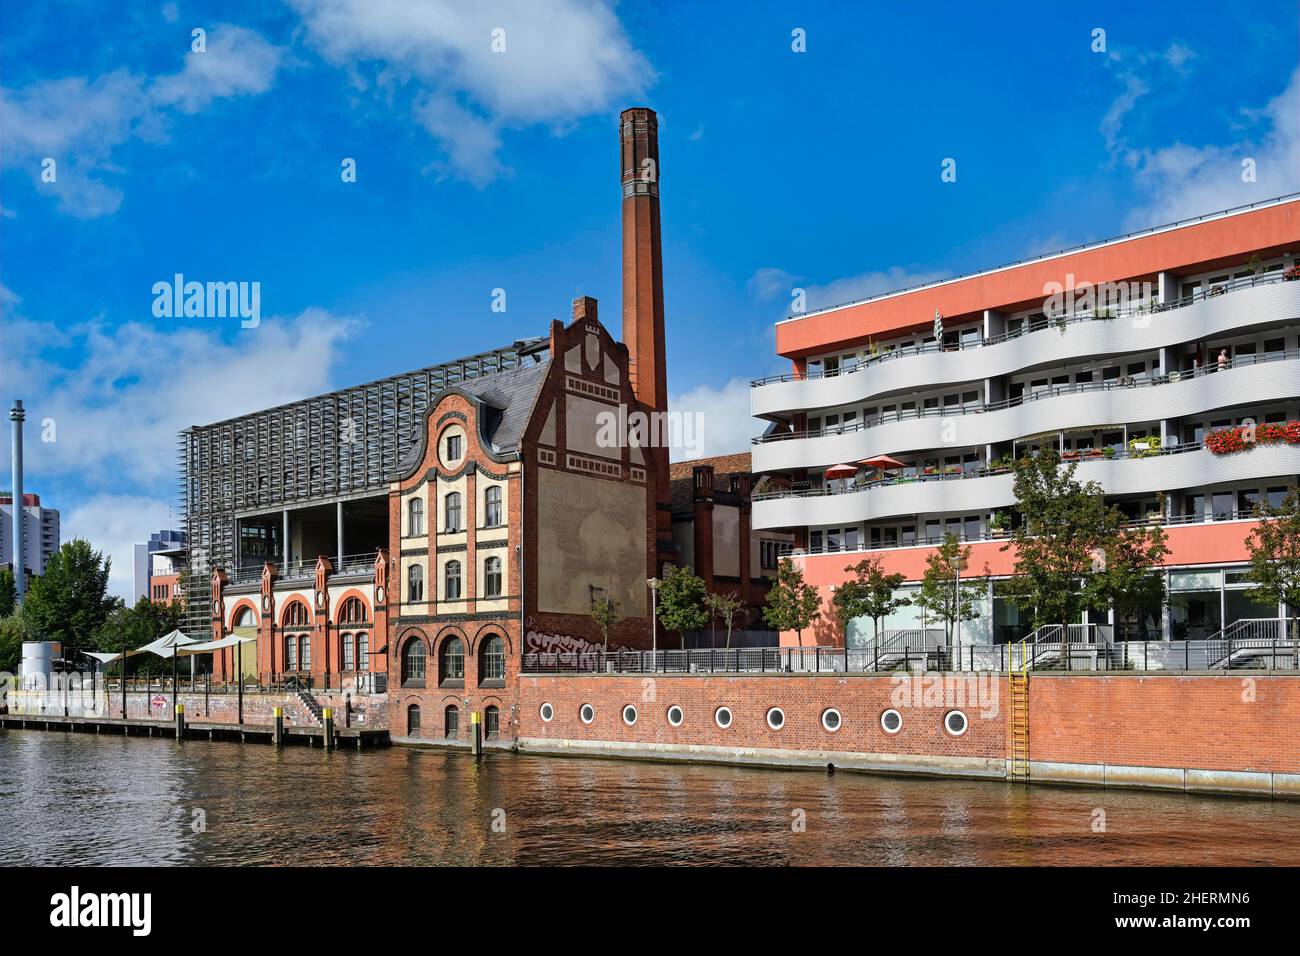 Bâtiments modernes et traditionnels le long de la rivière Spree, Berlin, Allemagne Banque D'Images